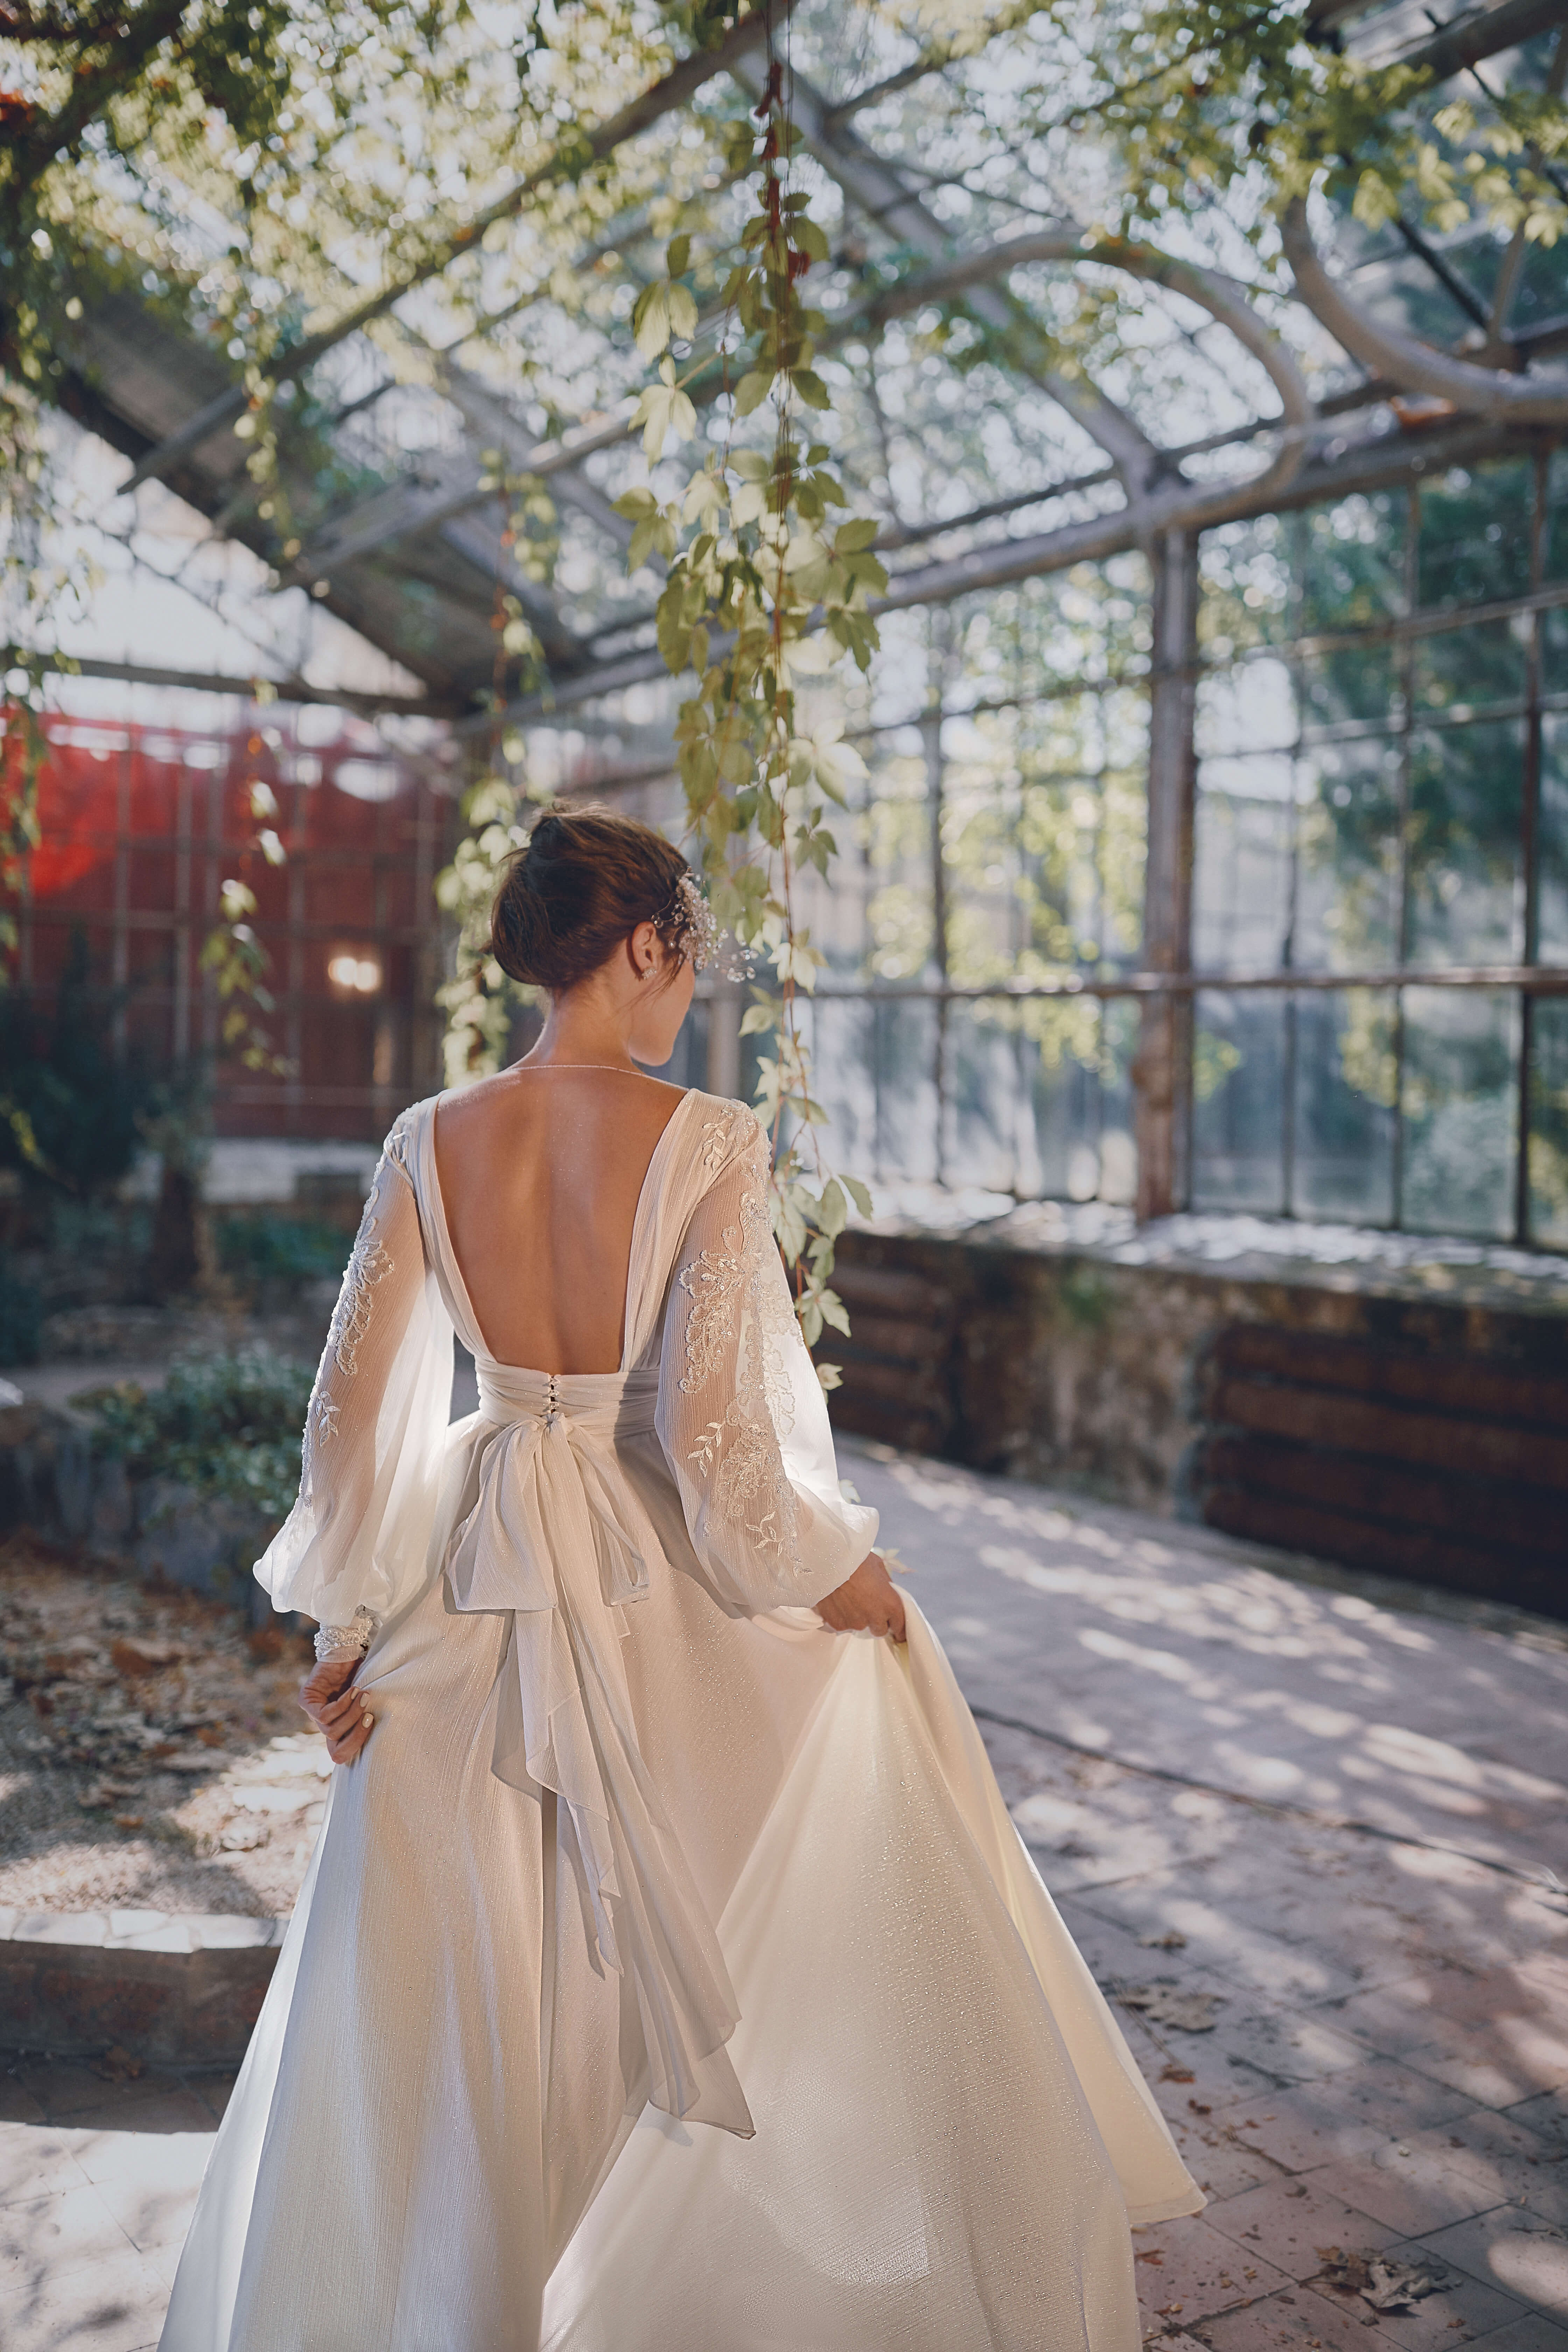 Купить свадебное платье «Полетта» Анже Этуаль из коллекции Леди Перл 2021 года в салоне «Мэри Трюфель»